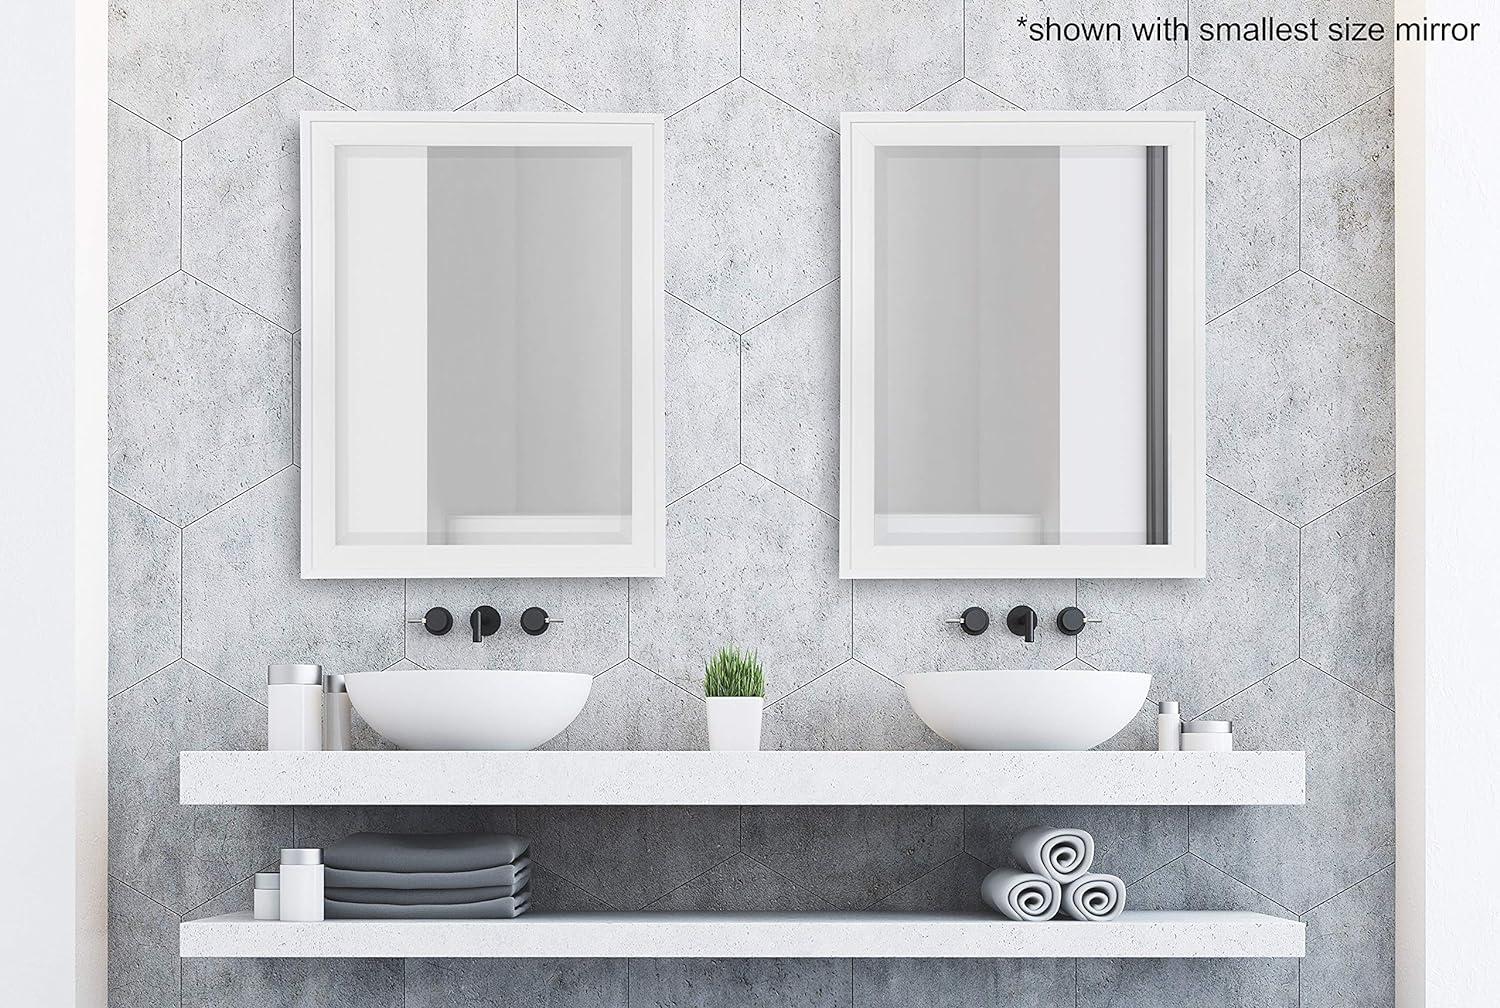 Elegant Full-Length White Polystyrene Framed Rectangular Mirror